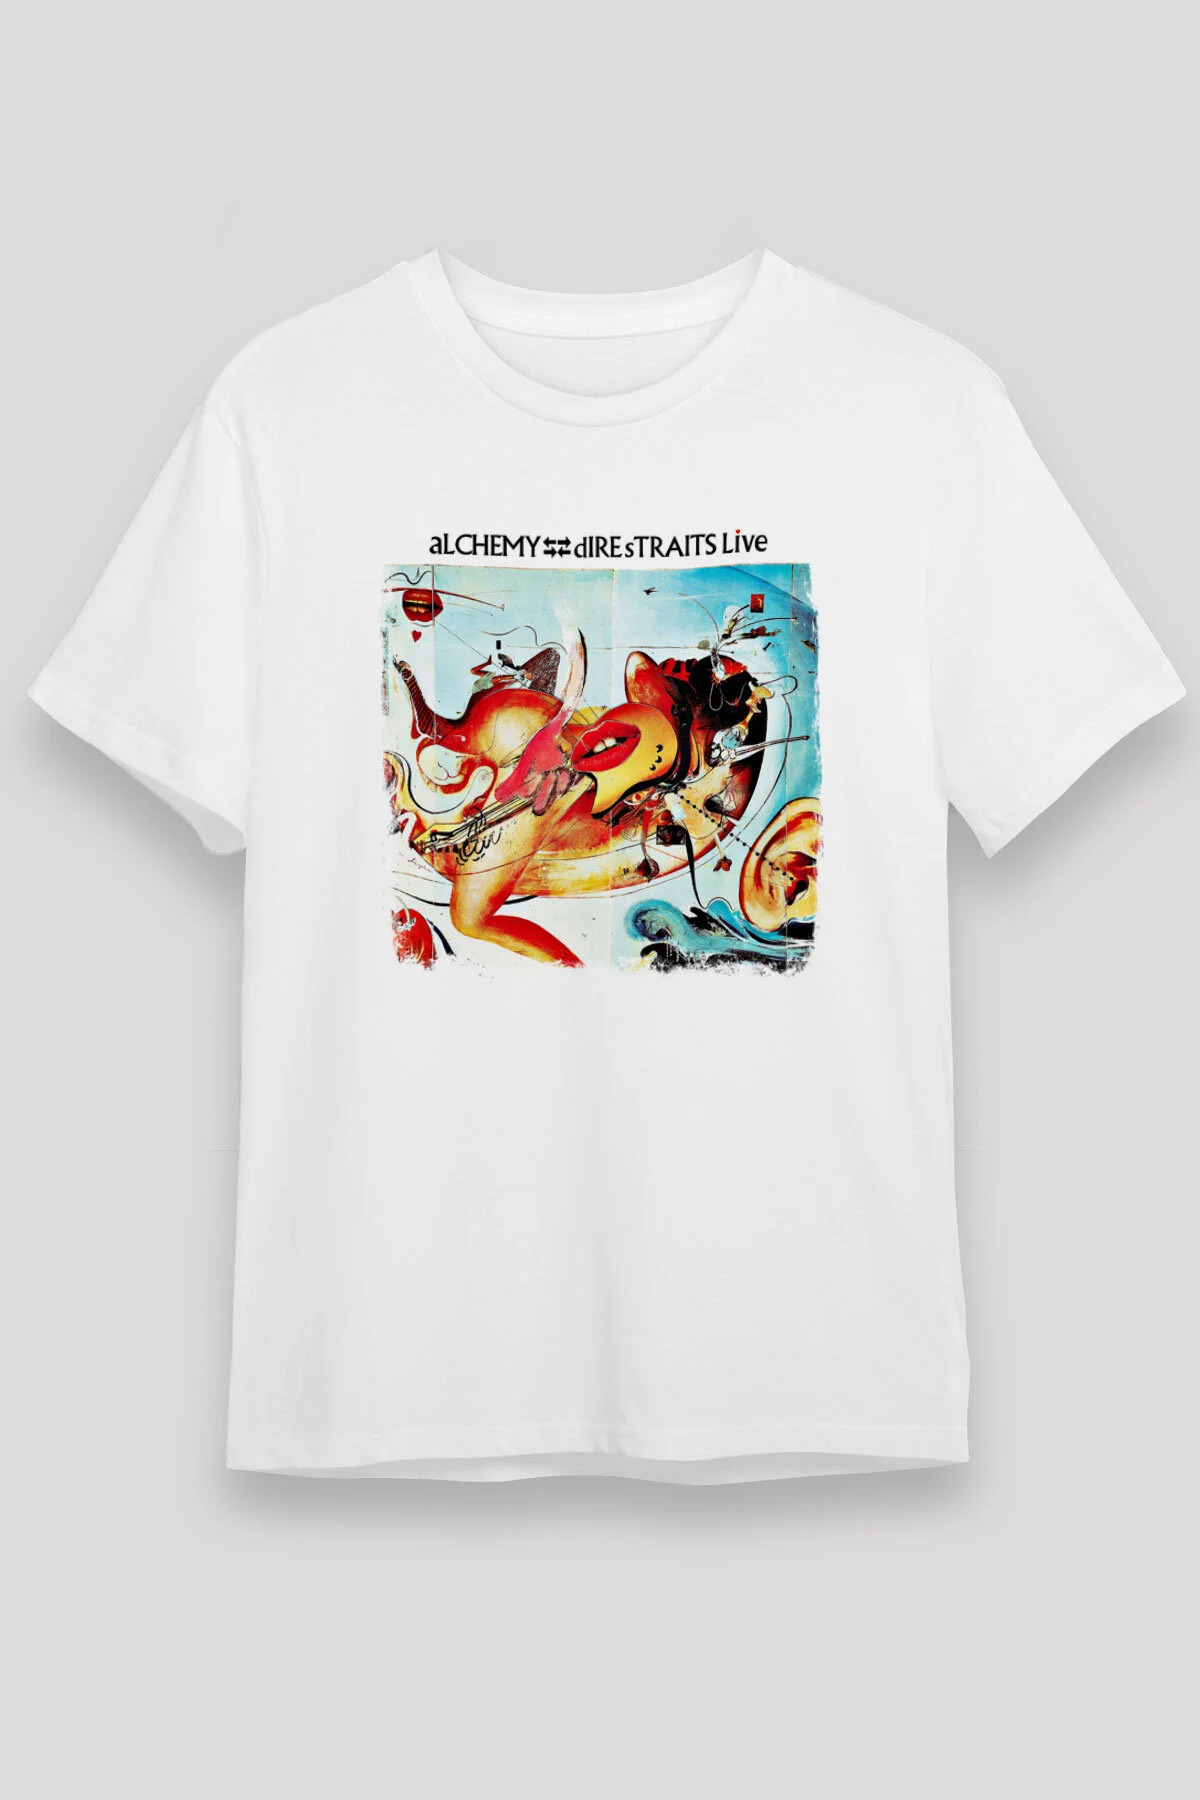 Dire Straits  T shirt , Music Band ,Unisex Tshirt 09